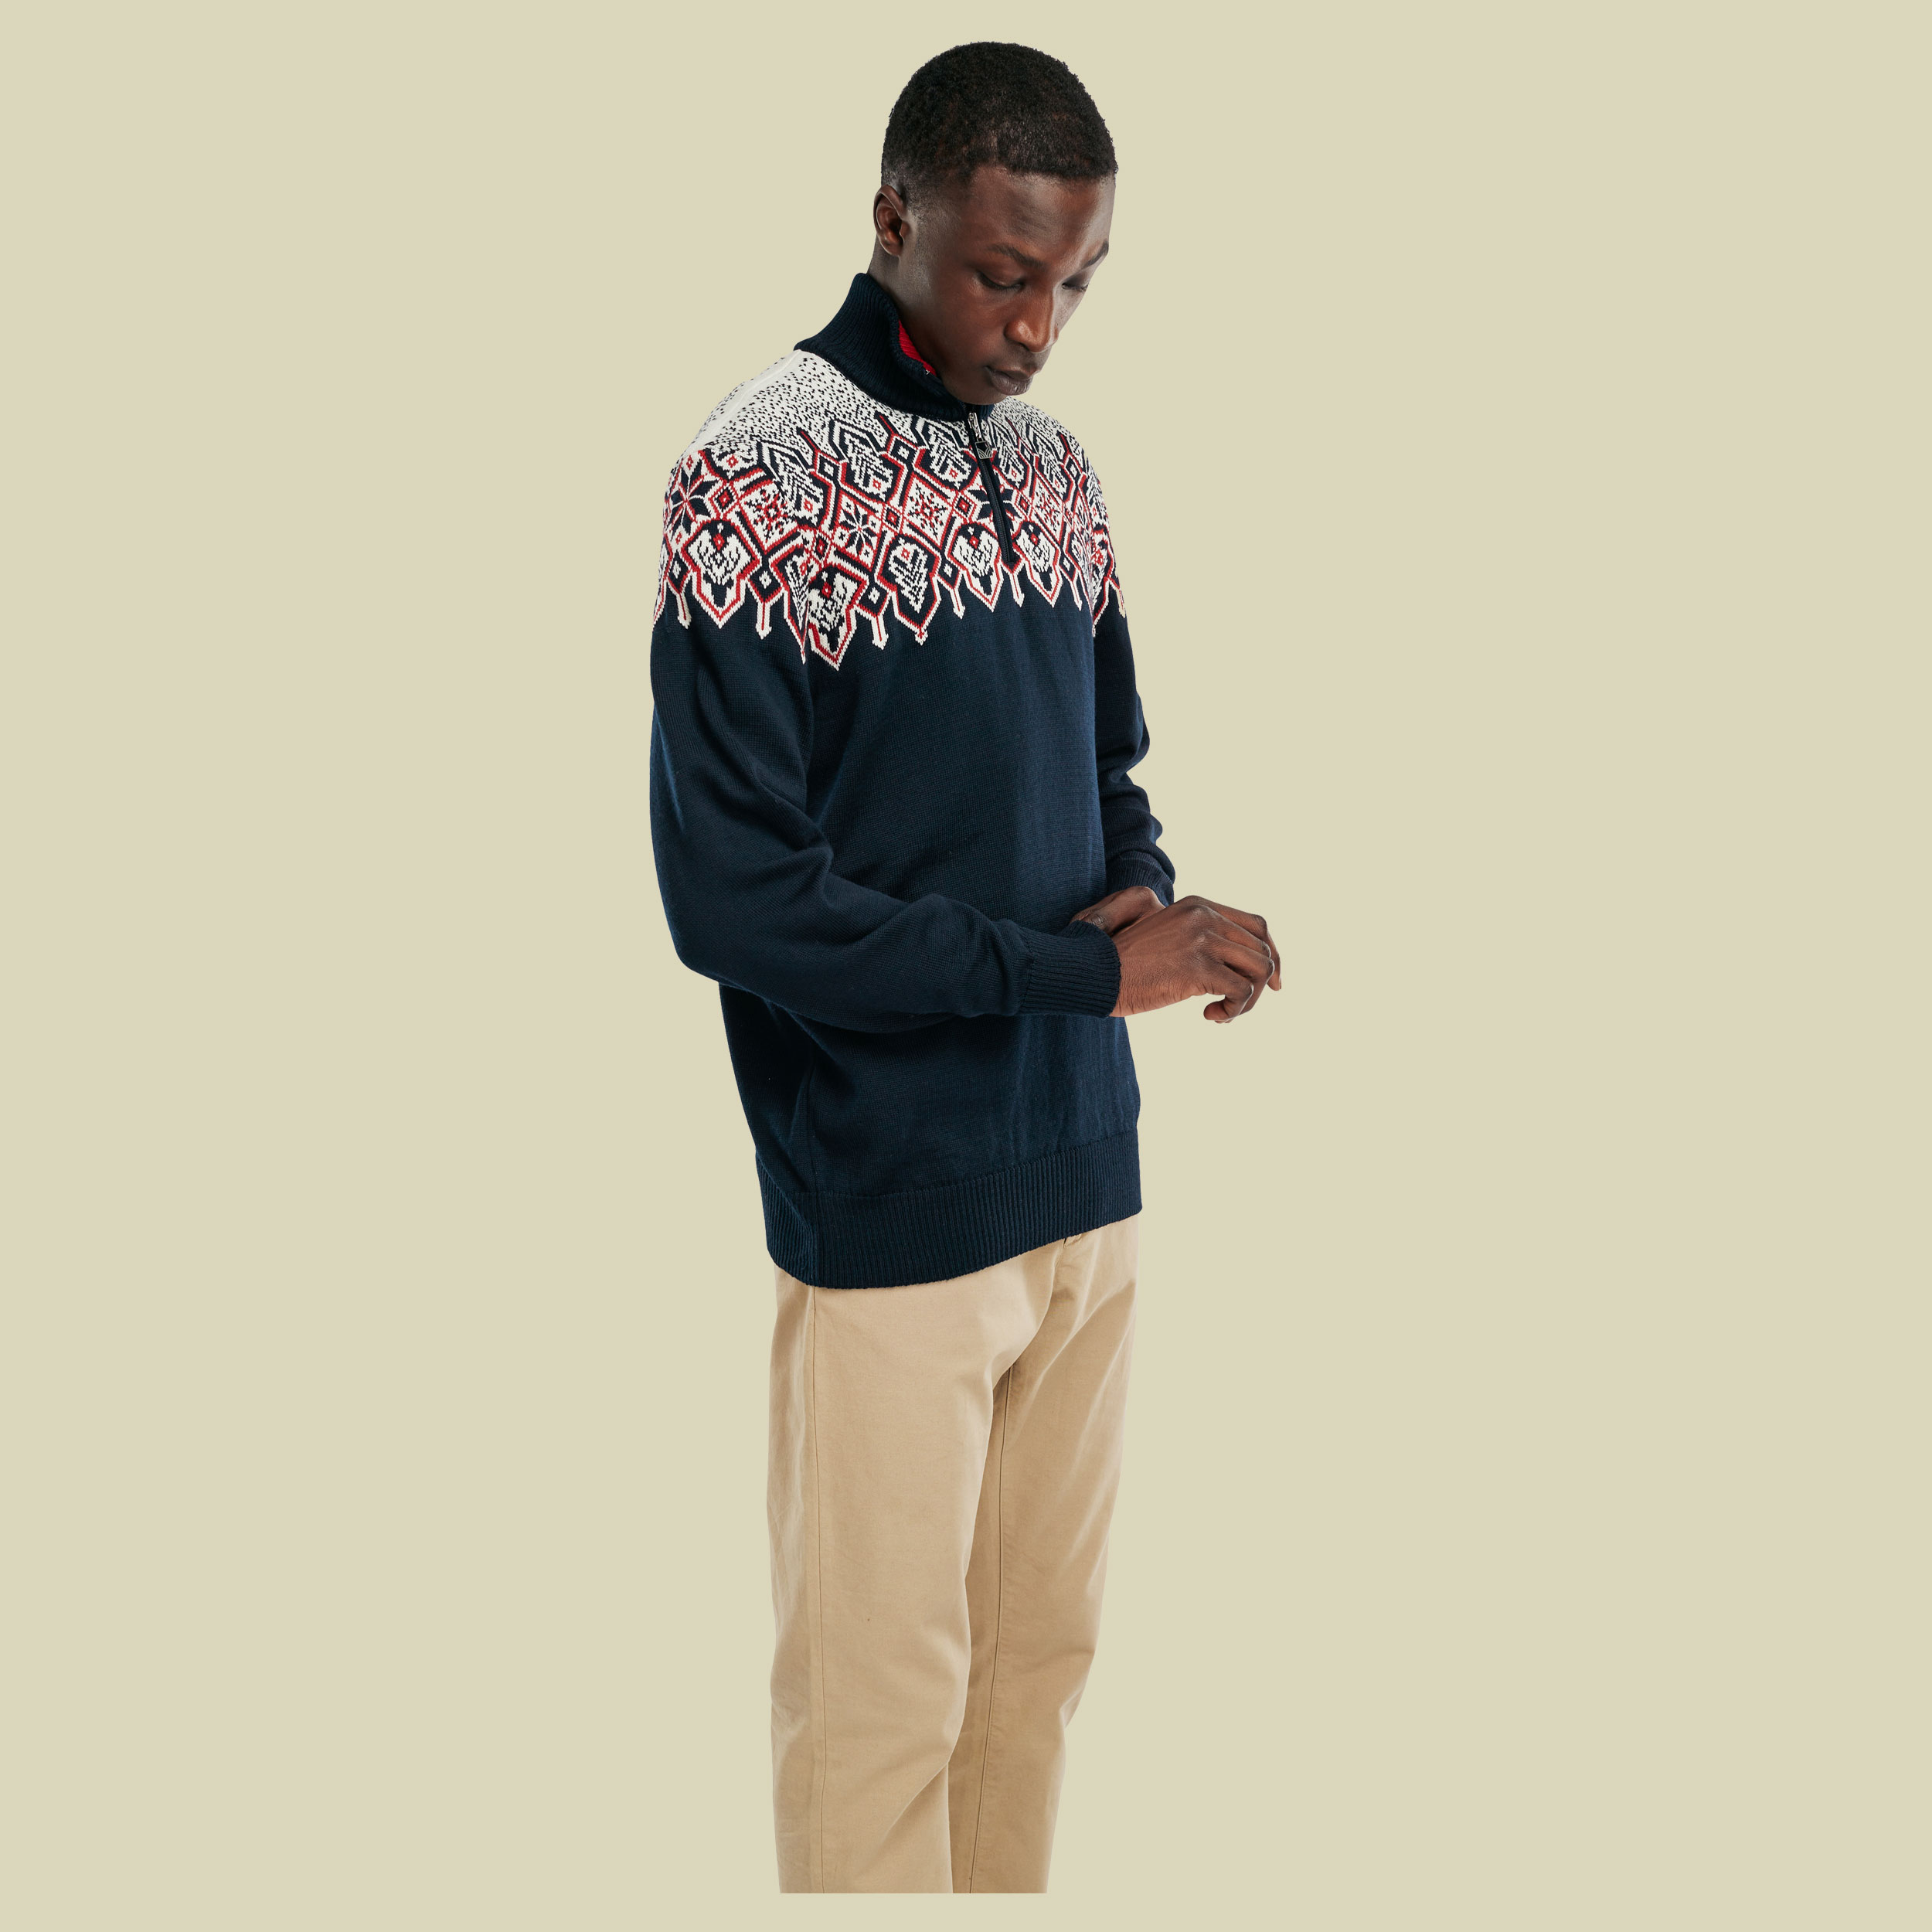 Winterland Sweater Men Größe XL Farbe navy-off white-raspberry